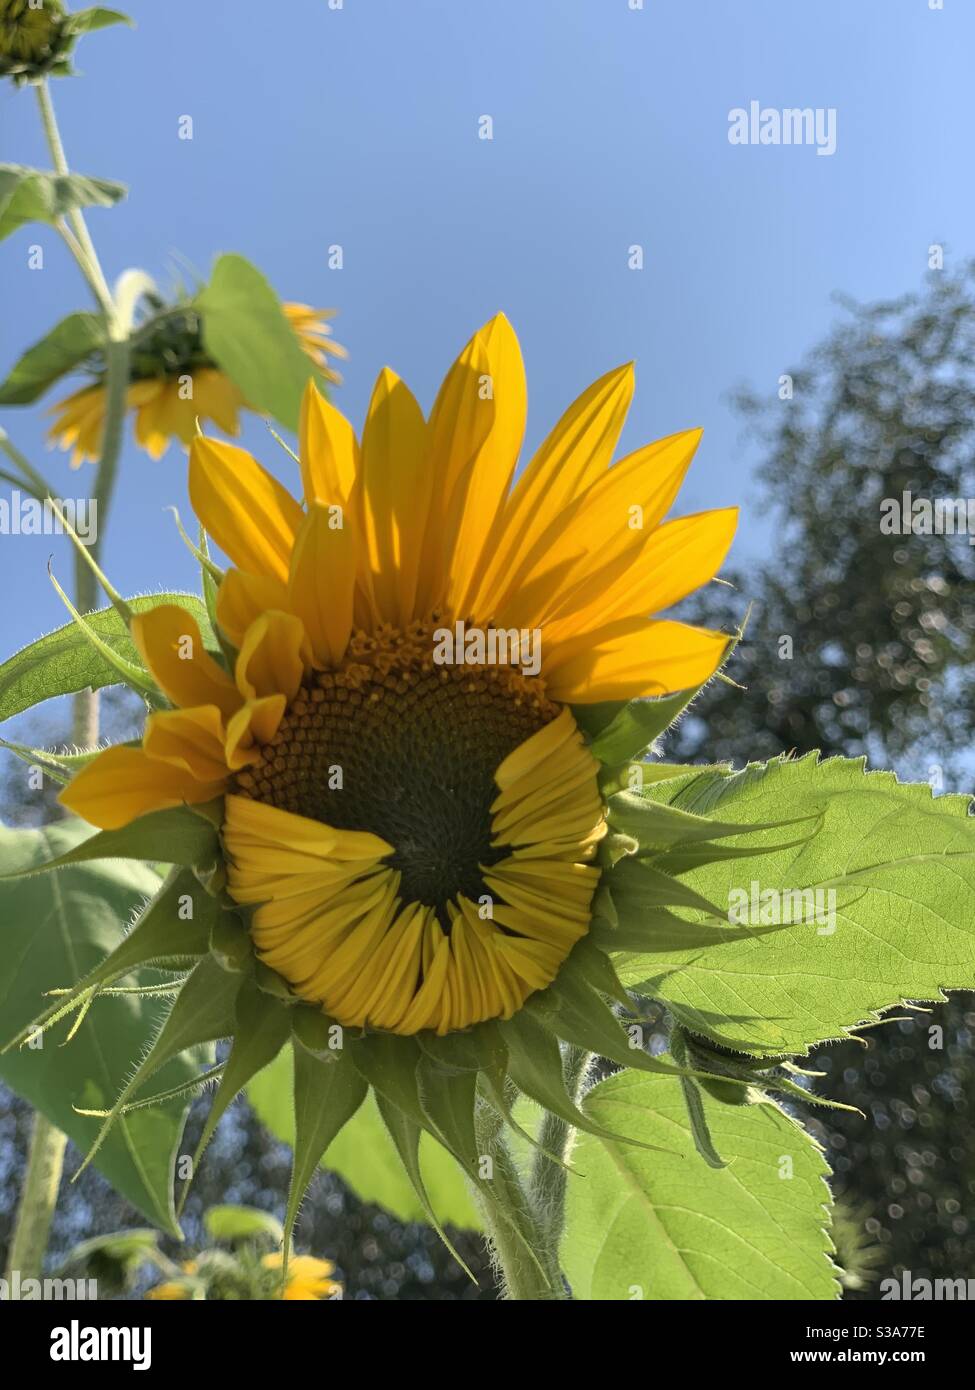 Guten Morgen! Diese Sonnenblume scheint nur mit uns für den Tag. Immer noch am Aufwachen zu dem sonnigen Tag vor uns. Stockfoto